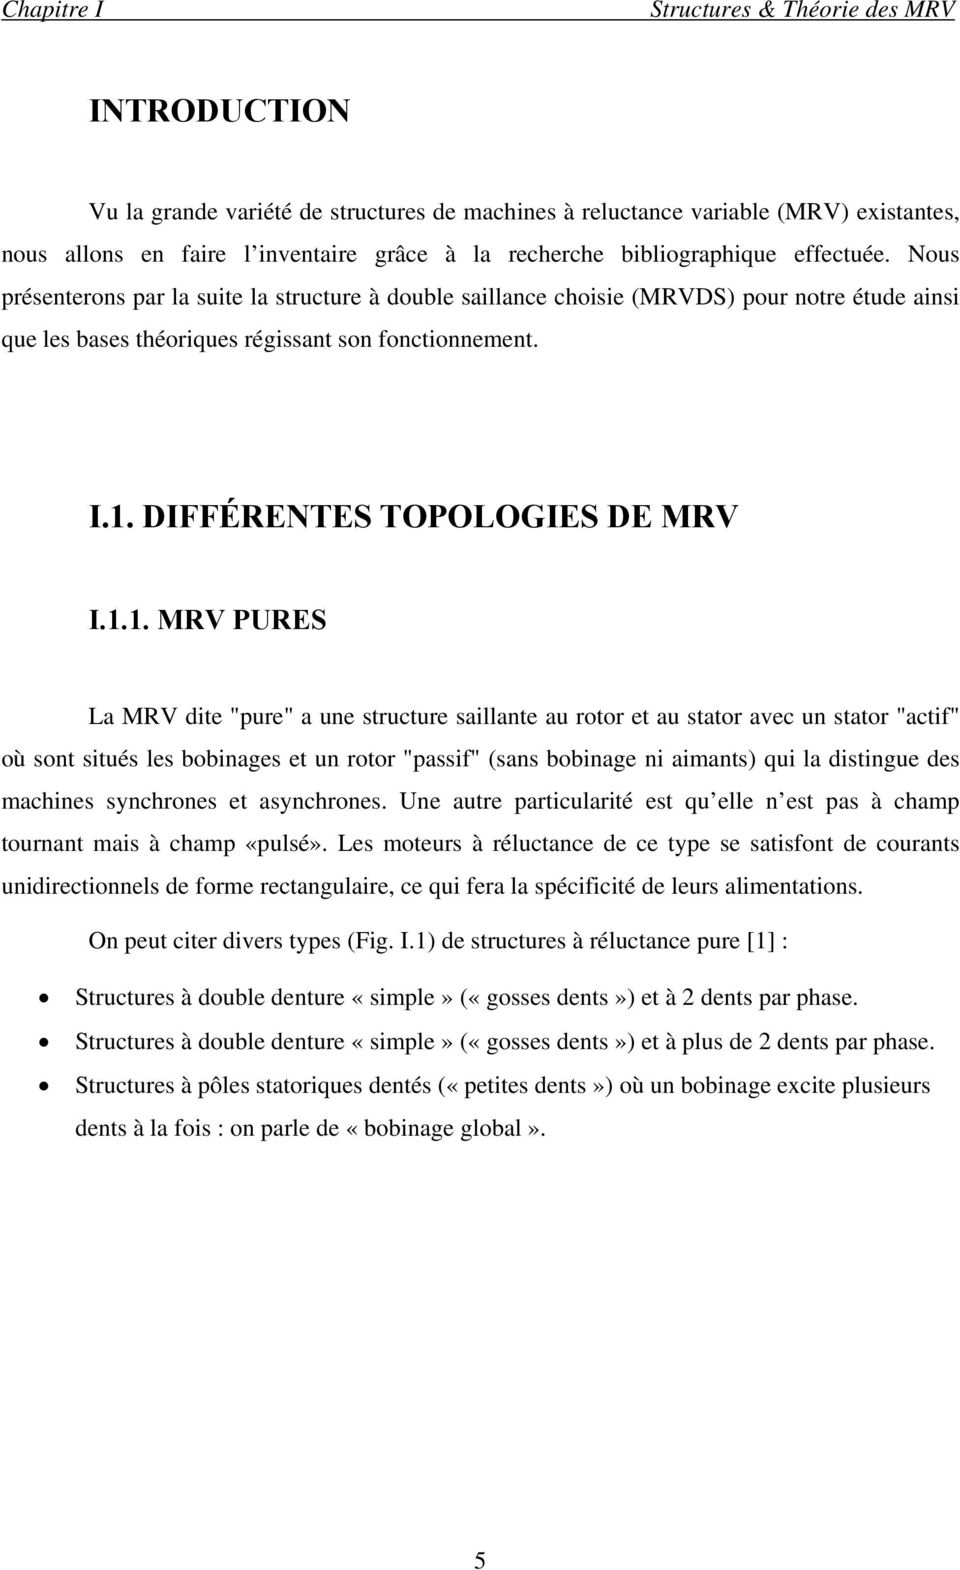 DIFFÉRENTES TOPOLOGIES DE MRV I.1.